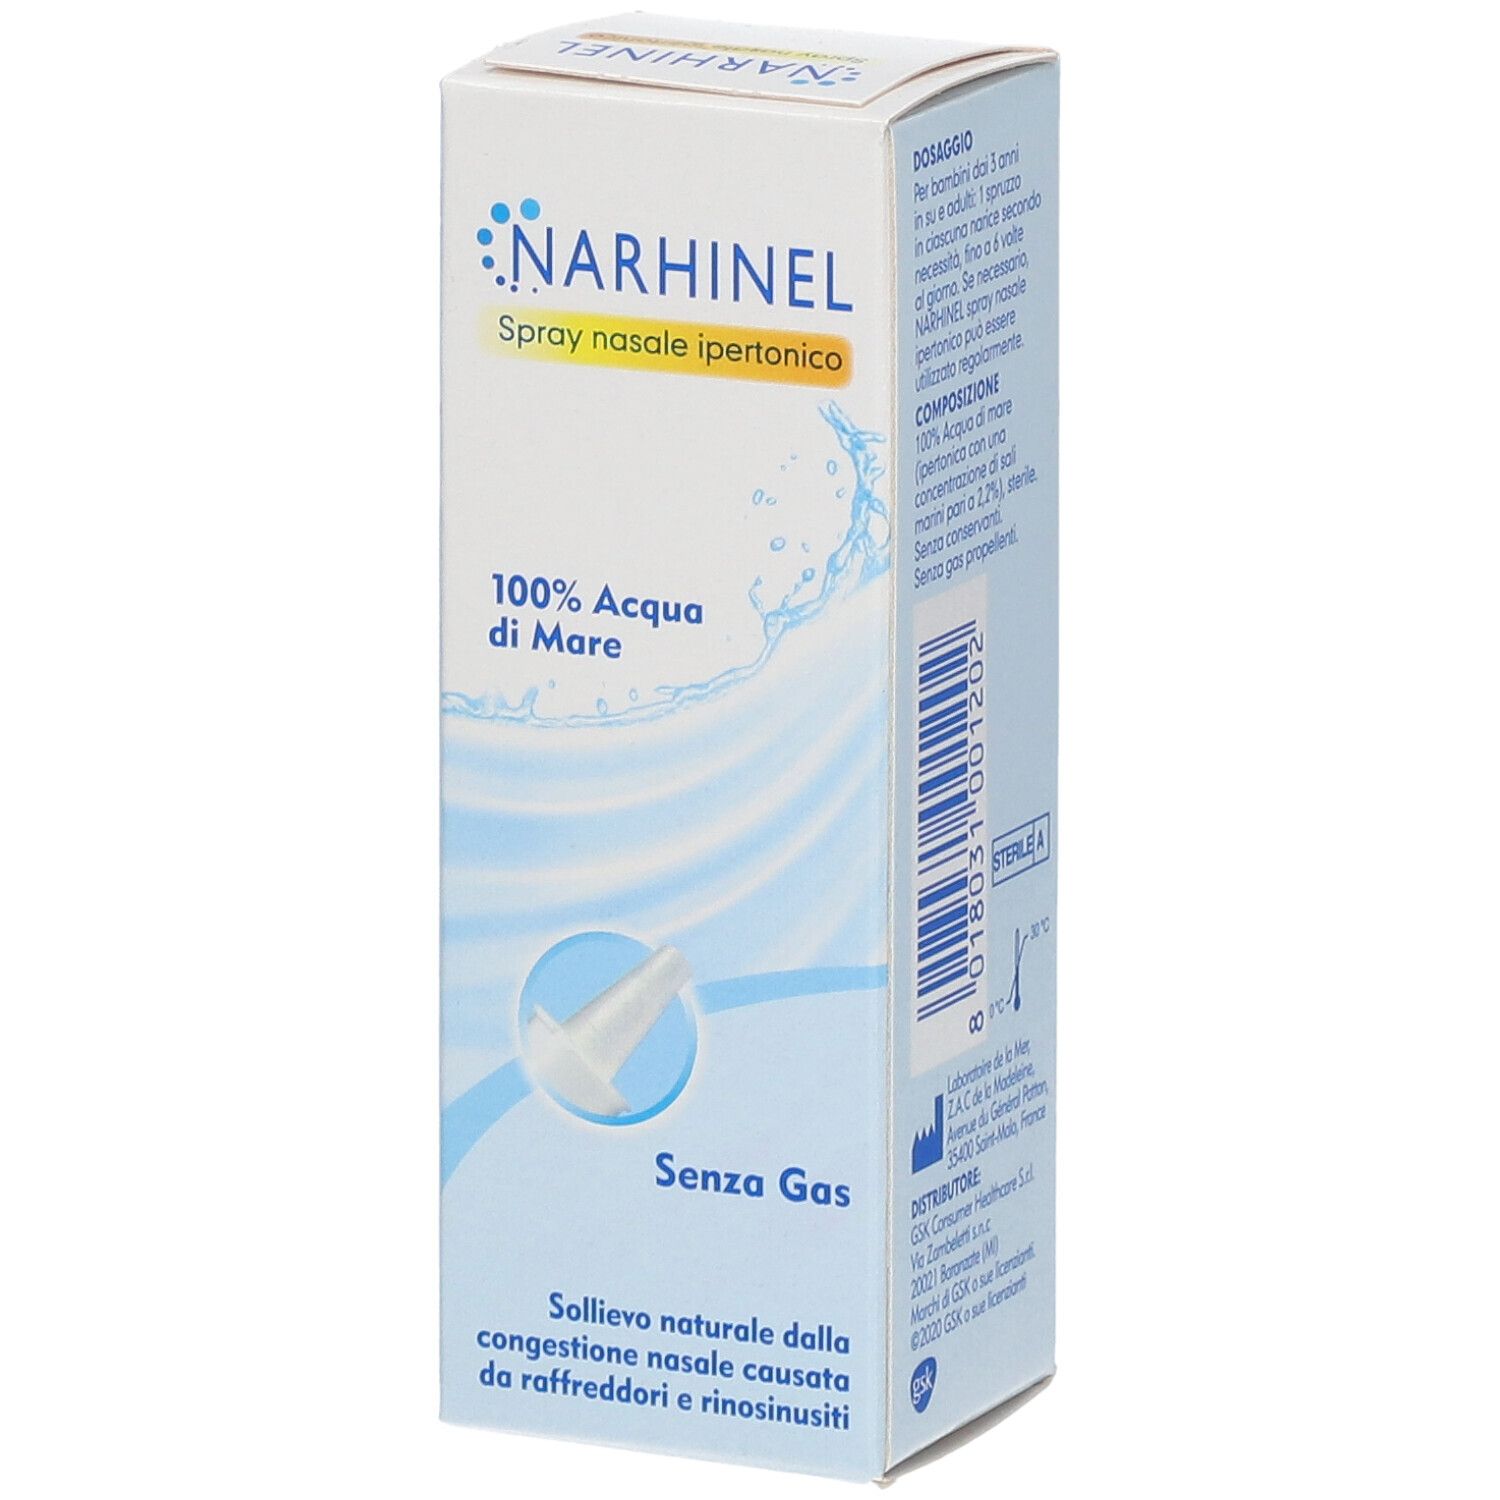 Narhinel spray nasale ipertonico, soluzione ipertonica di acqua di mare,  per un sollievo dal naso chiuso dovuto a raffreddore, rinosinusite e rinite